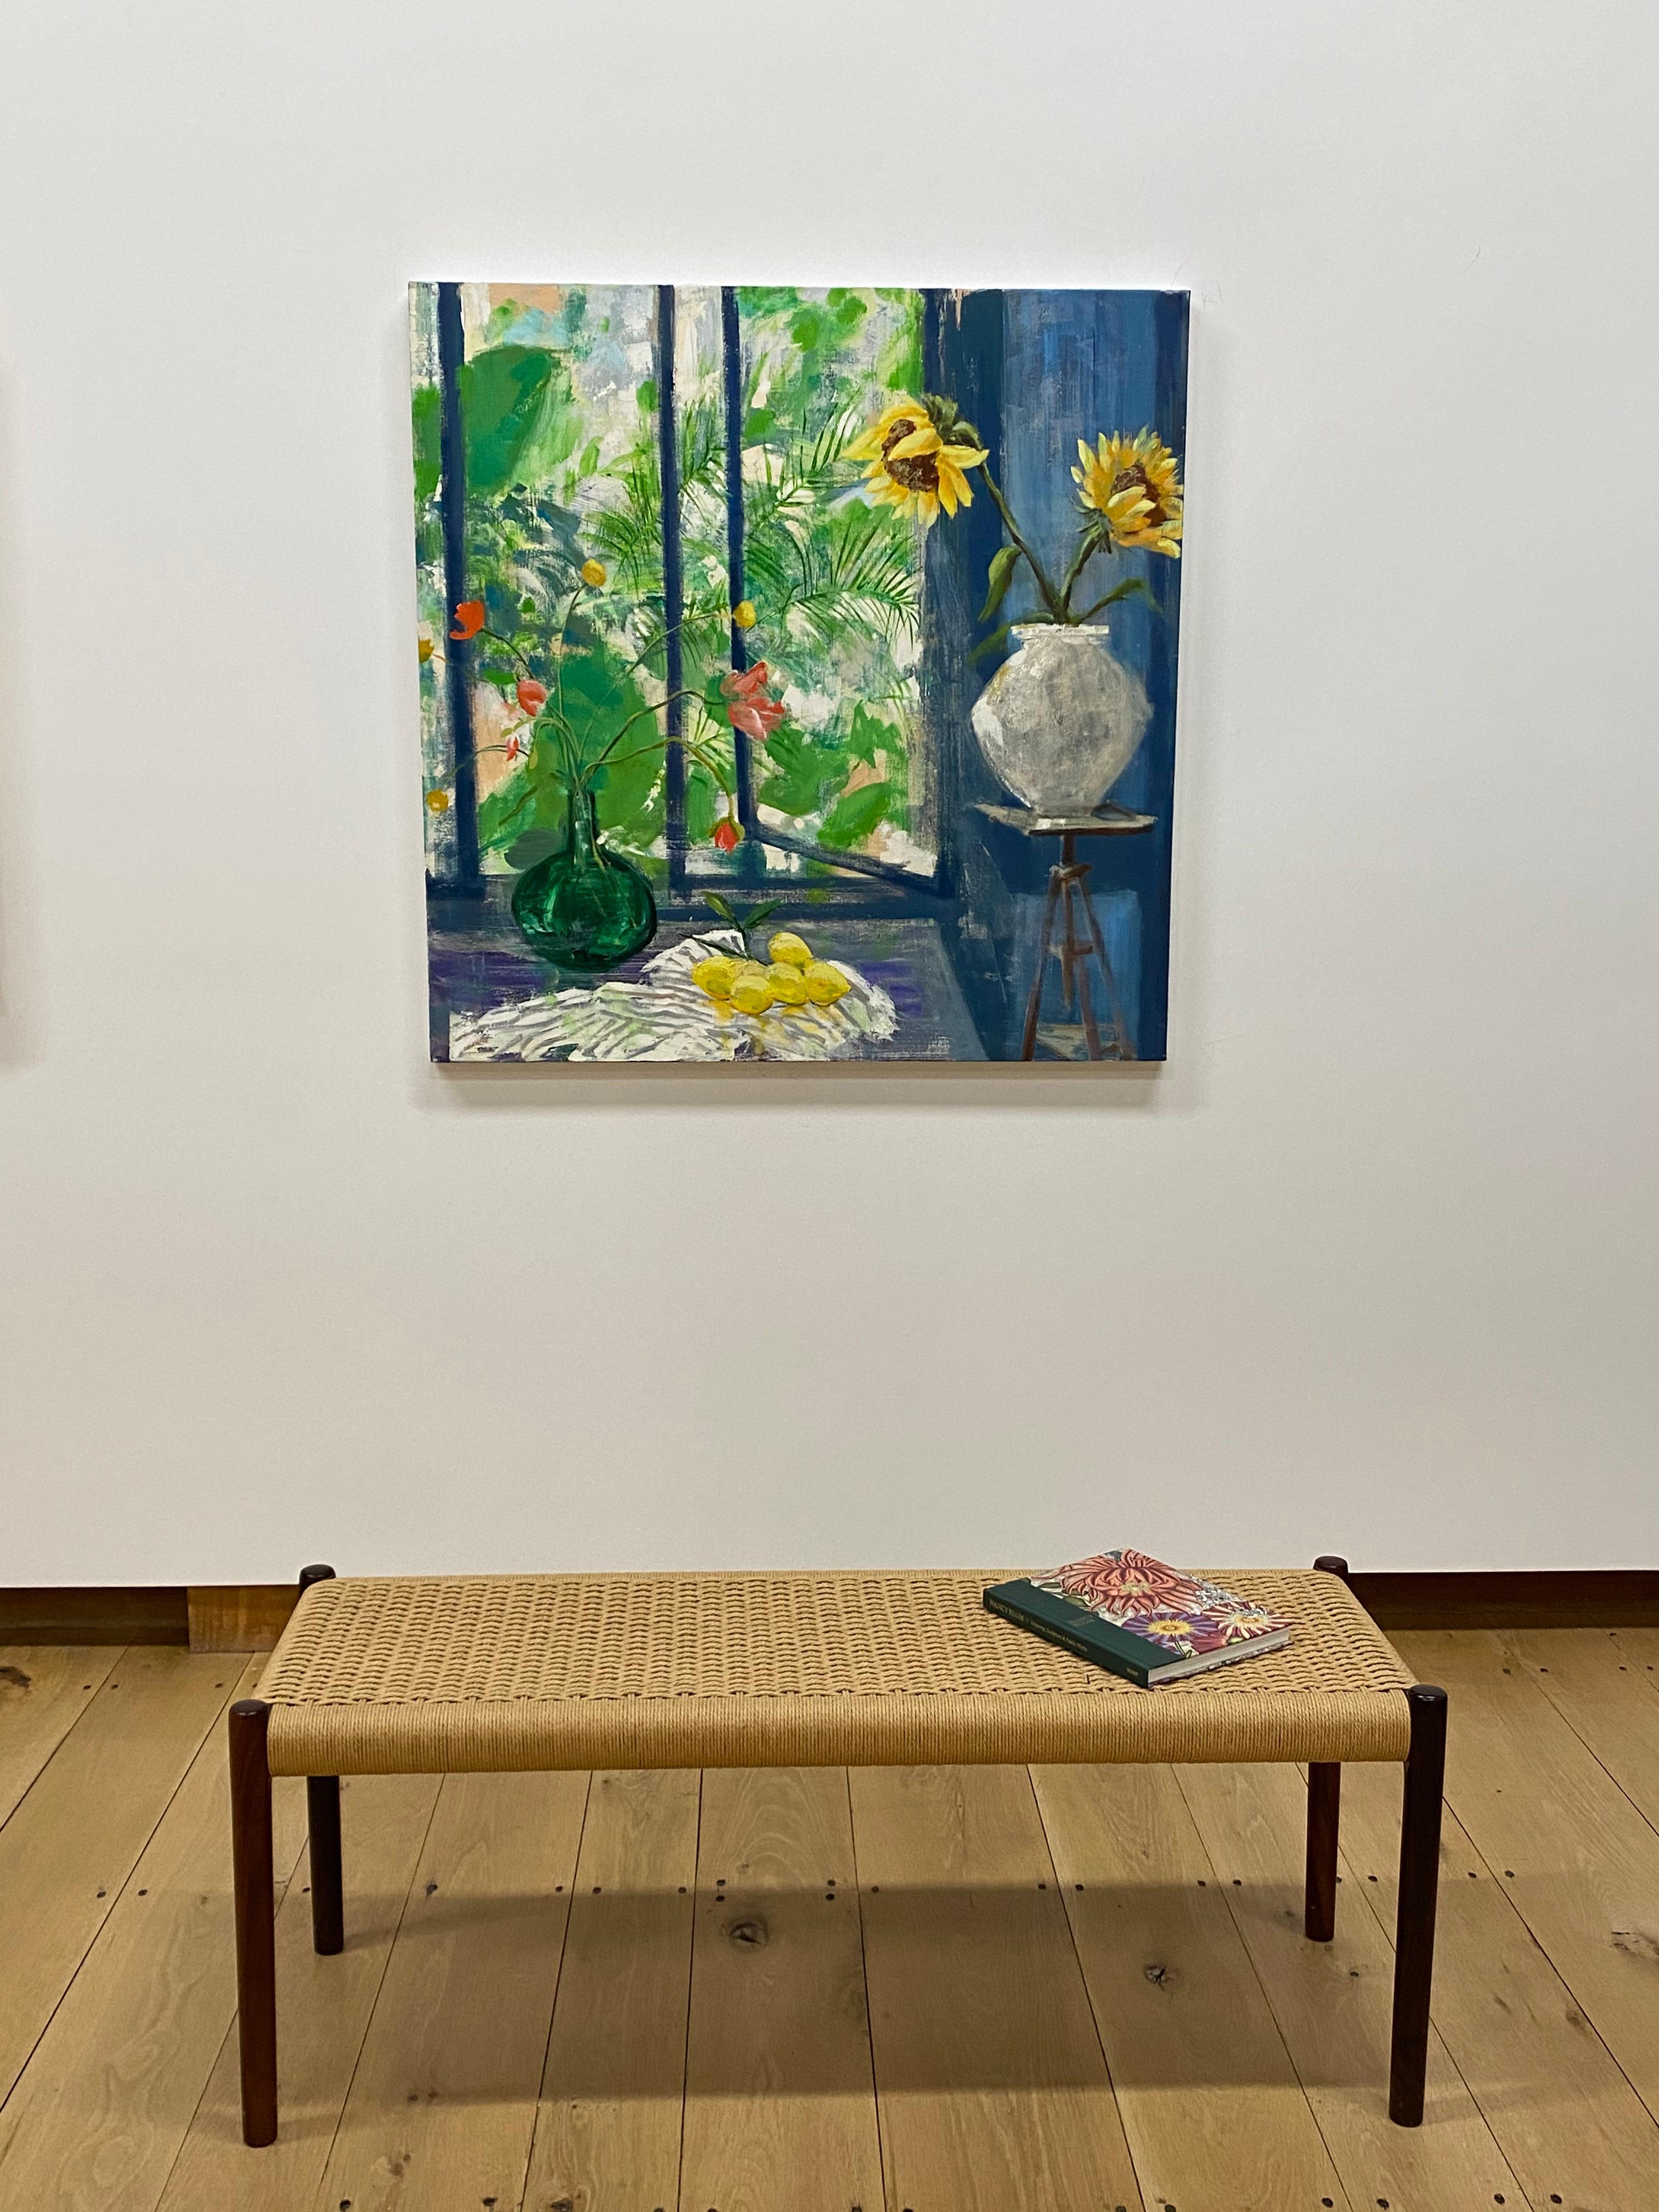 Arezzo-Sonnen, gelbe Sonnenblumen, Fenster, blaues botanisches Stillleben im Innenraum – Painting von Melanie Parke